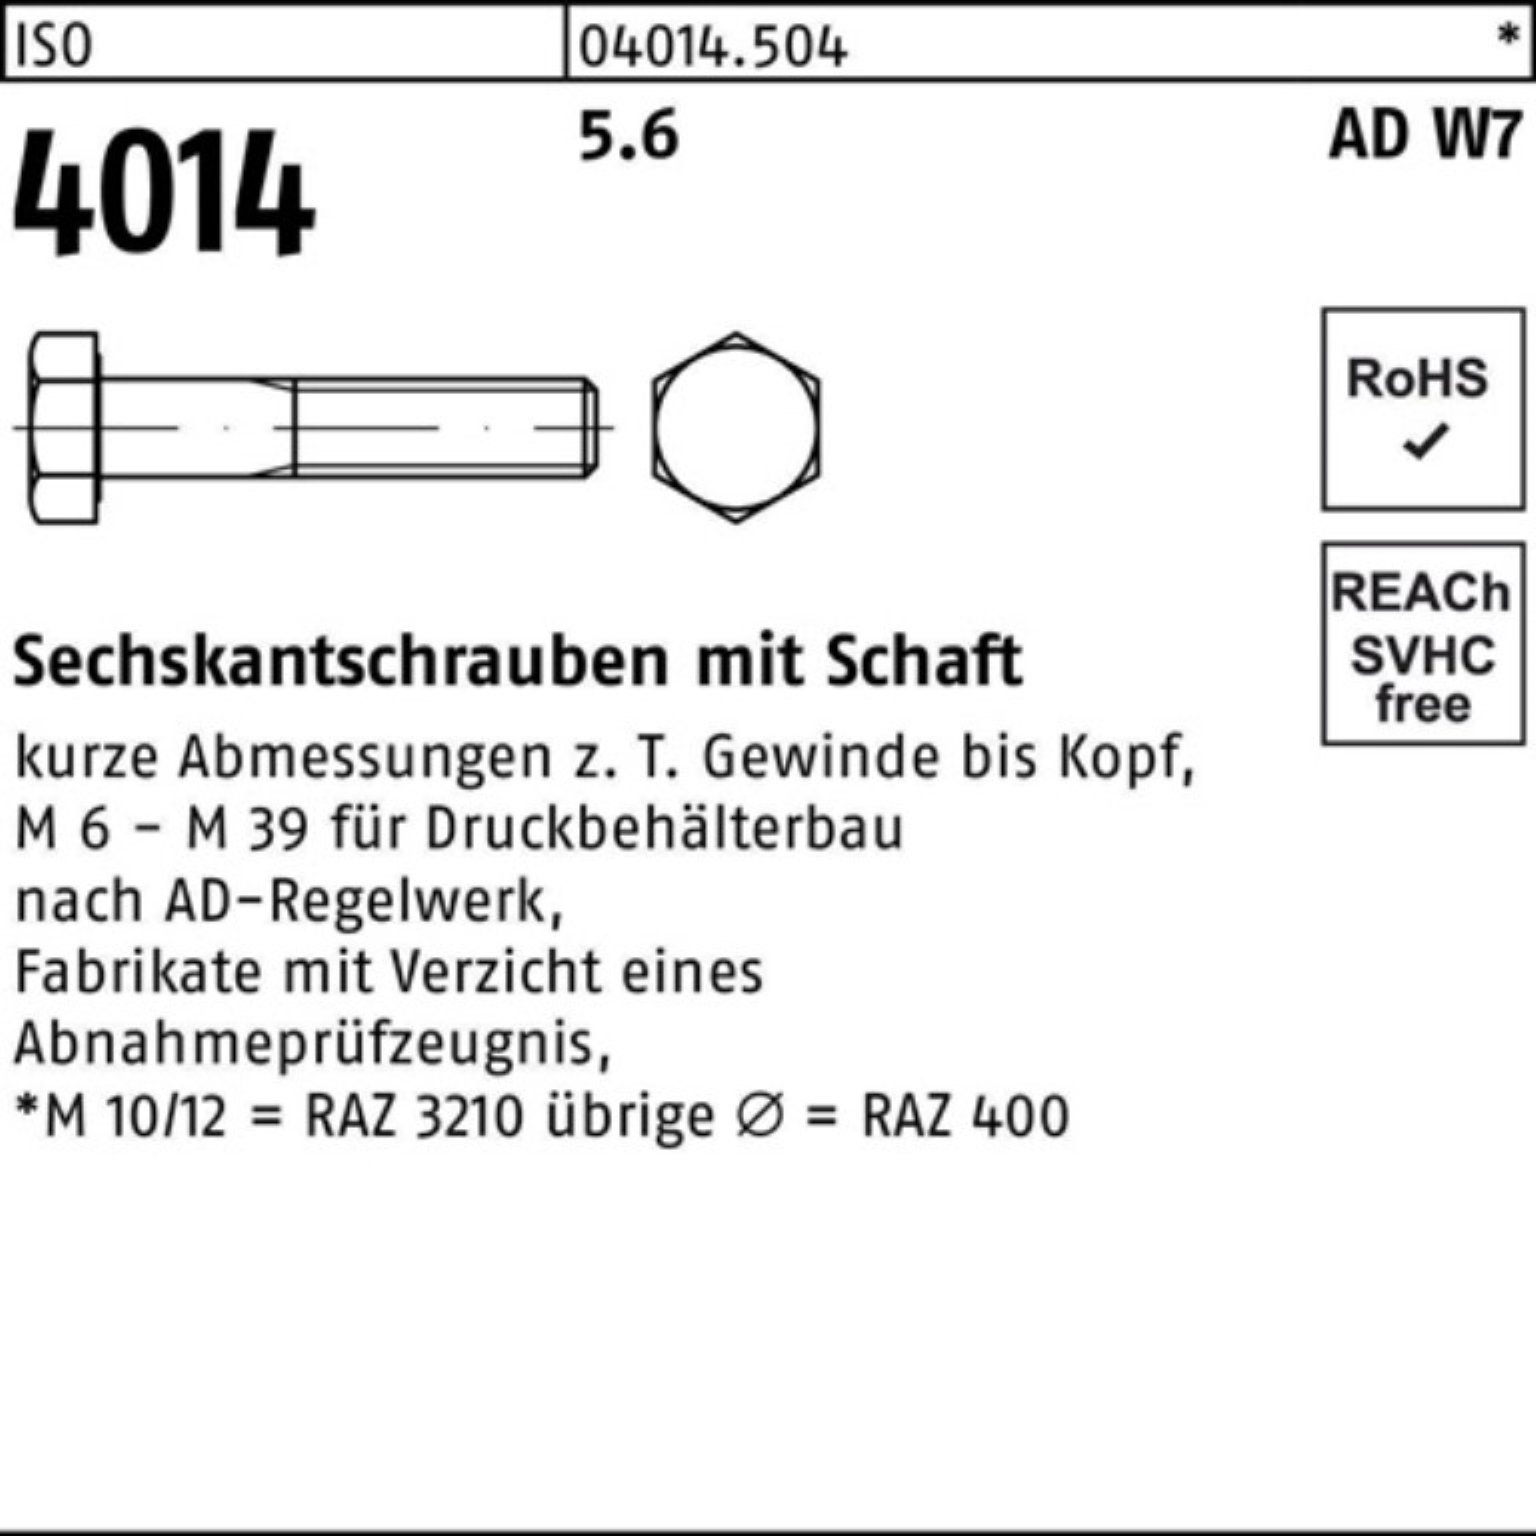 130 1 4014 ISO Sechskantschraube Sechskantschraube Bufab Schaft Stück 5.6 W7 100er Pack M27x